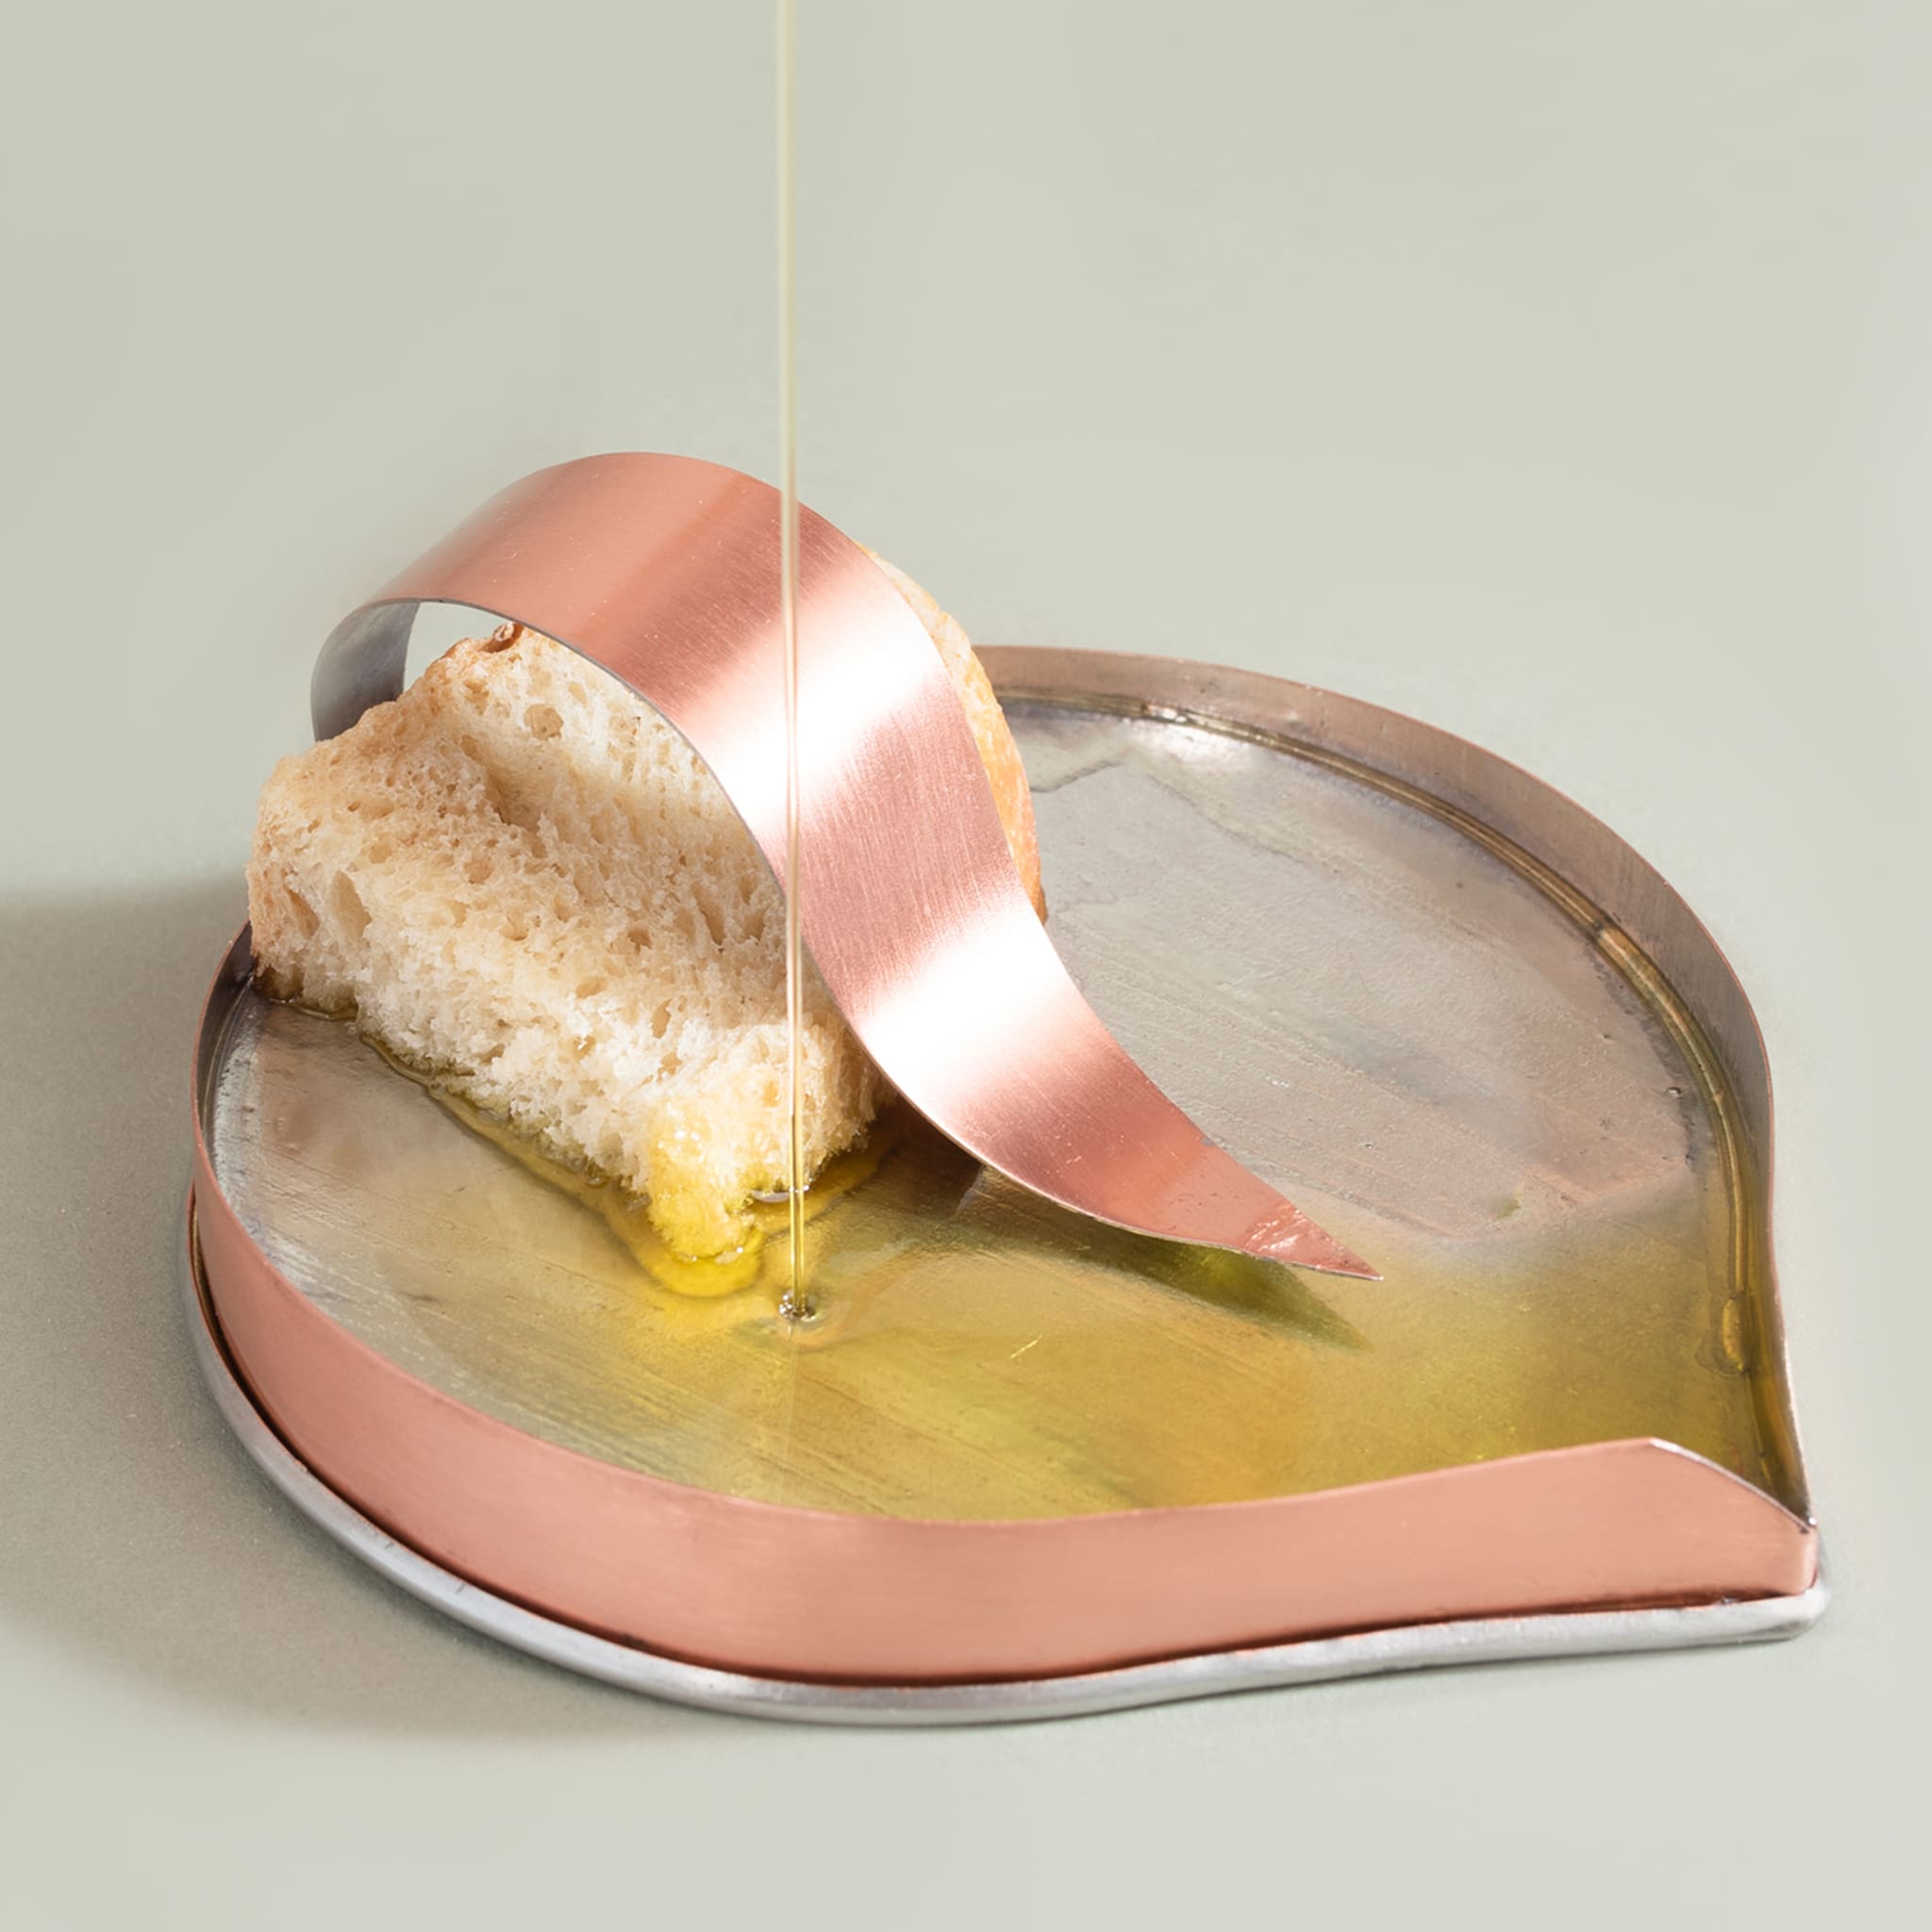 Famiglia Oliva - Set of 2 Gea bread and oil plates - Alternative view 3